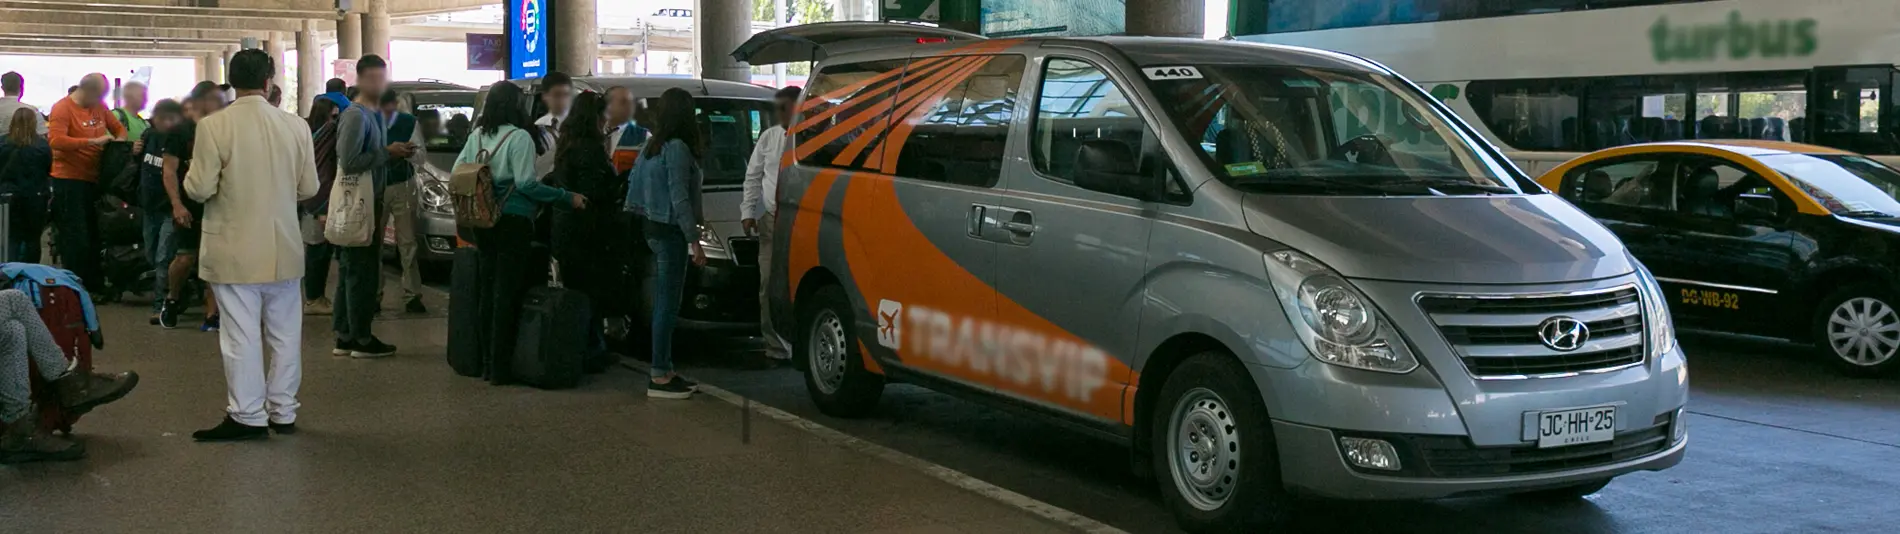 taxi compartido aeropuerto santiago - Qué es un transfer en Chile